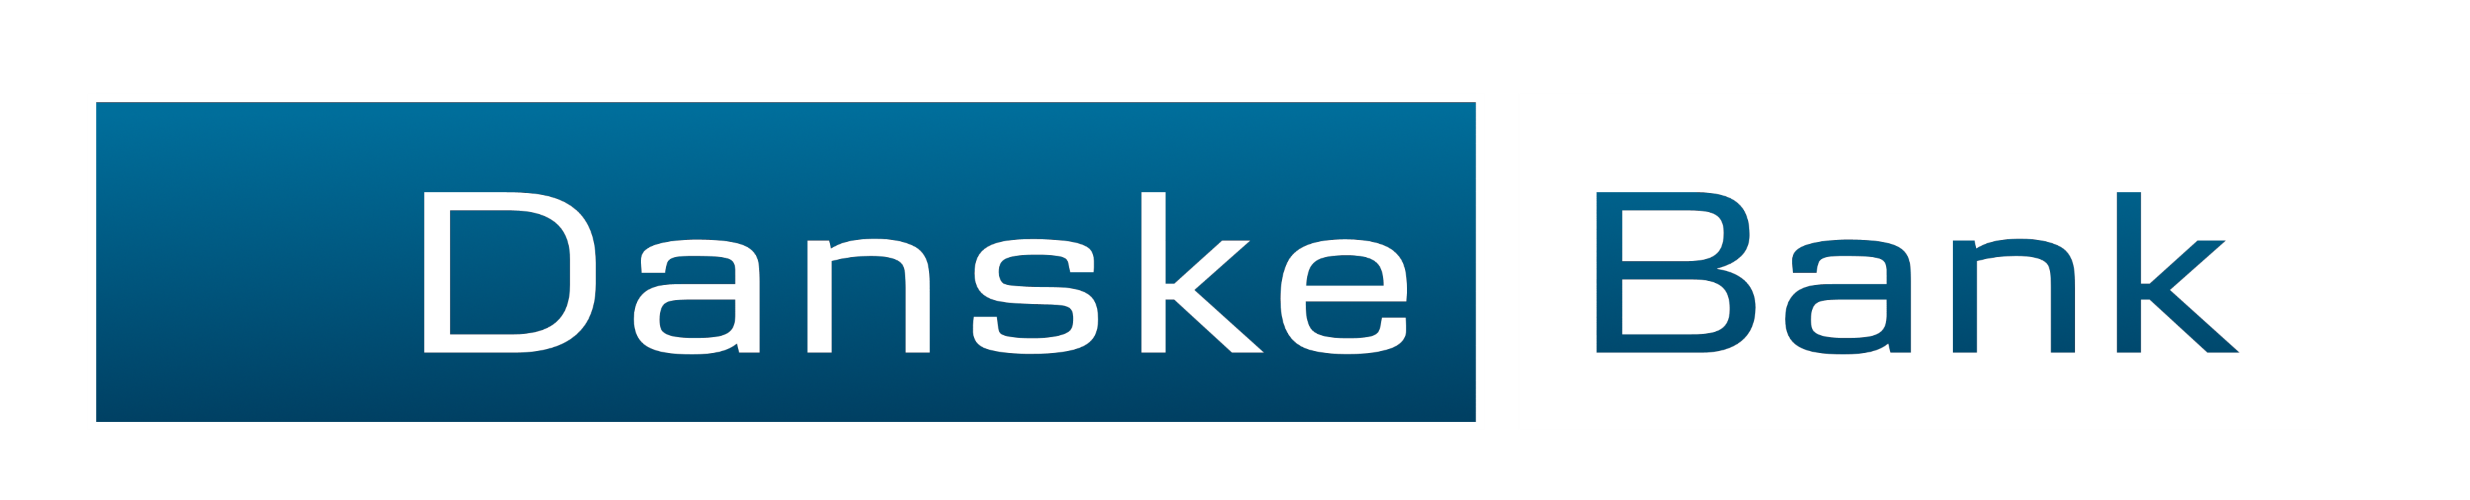 Danske_Bank_logo_gradient